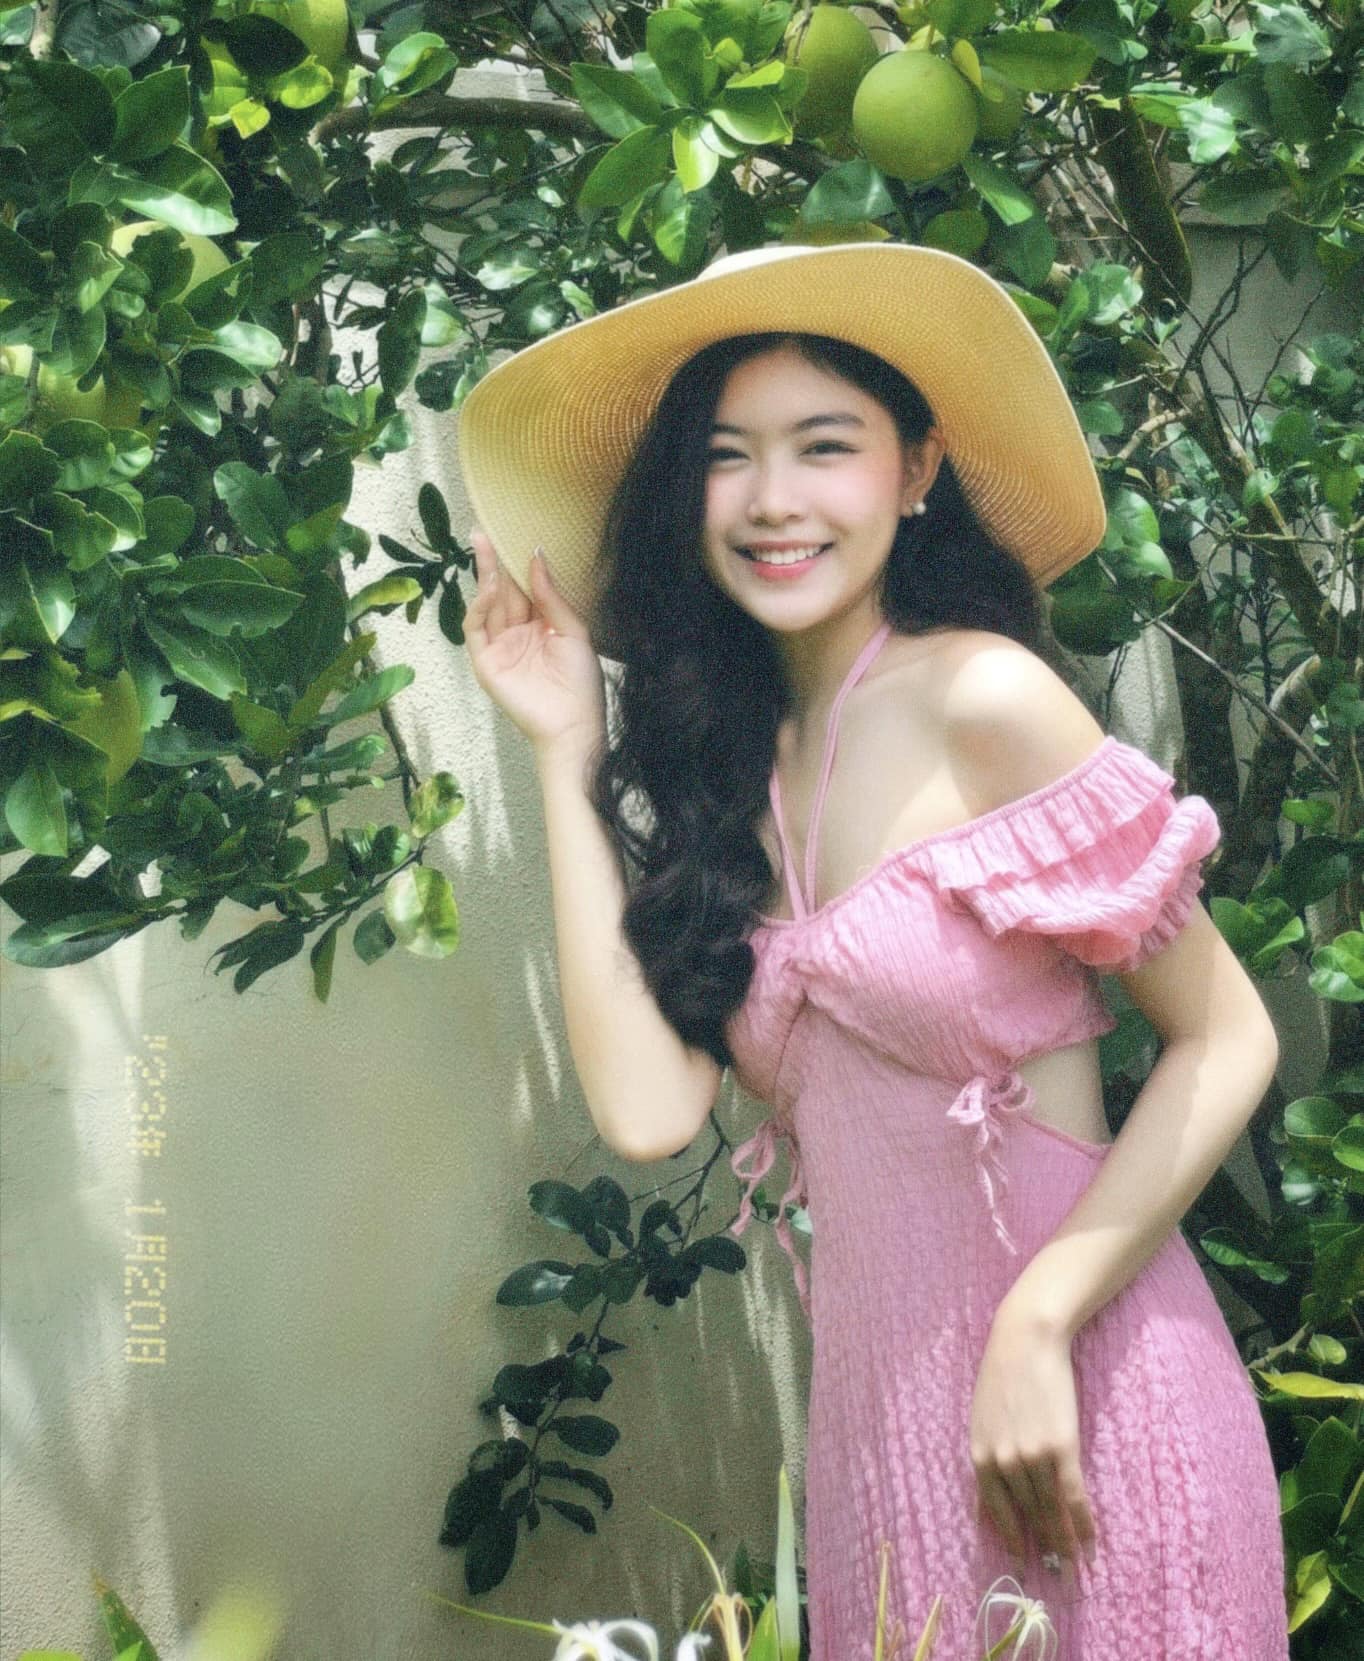 2 con gái của MC Quyền Linh khoe vẻ đẹp xuất sắc, CĐM khen: 'Đây mới là nhan sắc Hoa hậu' - ảnh 3